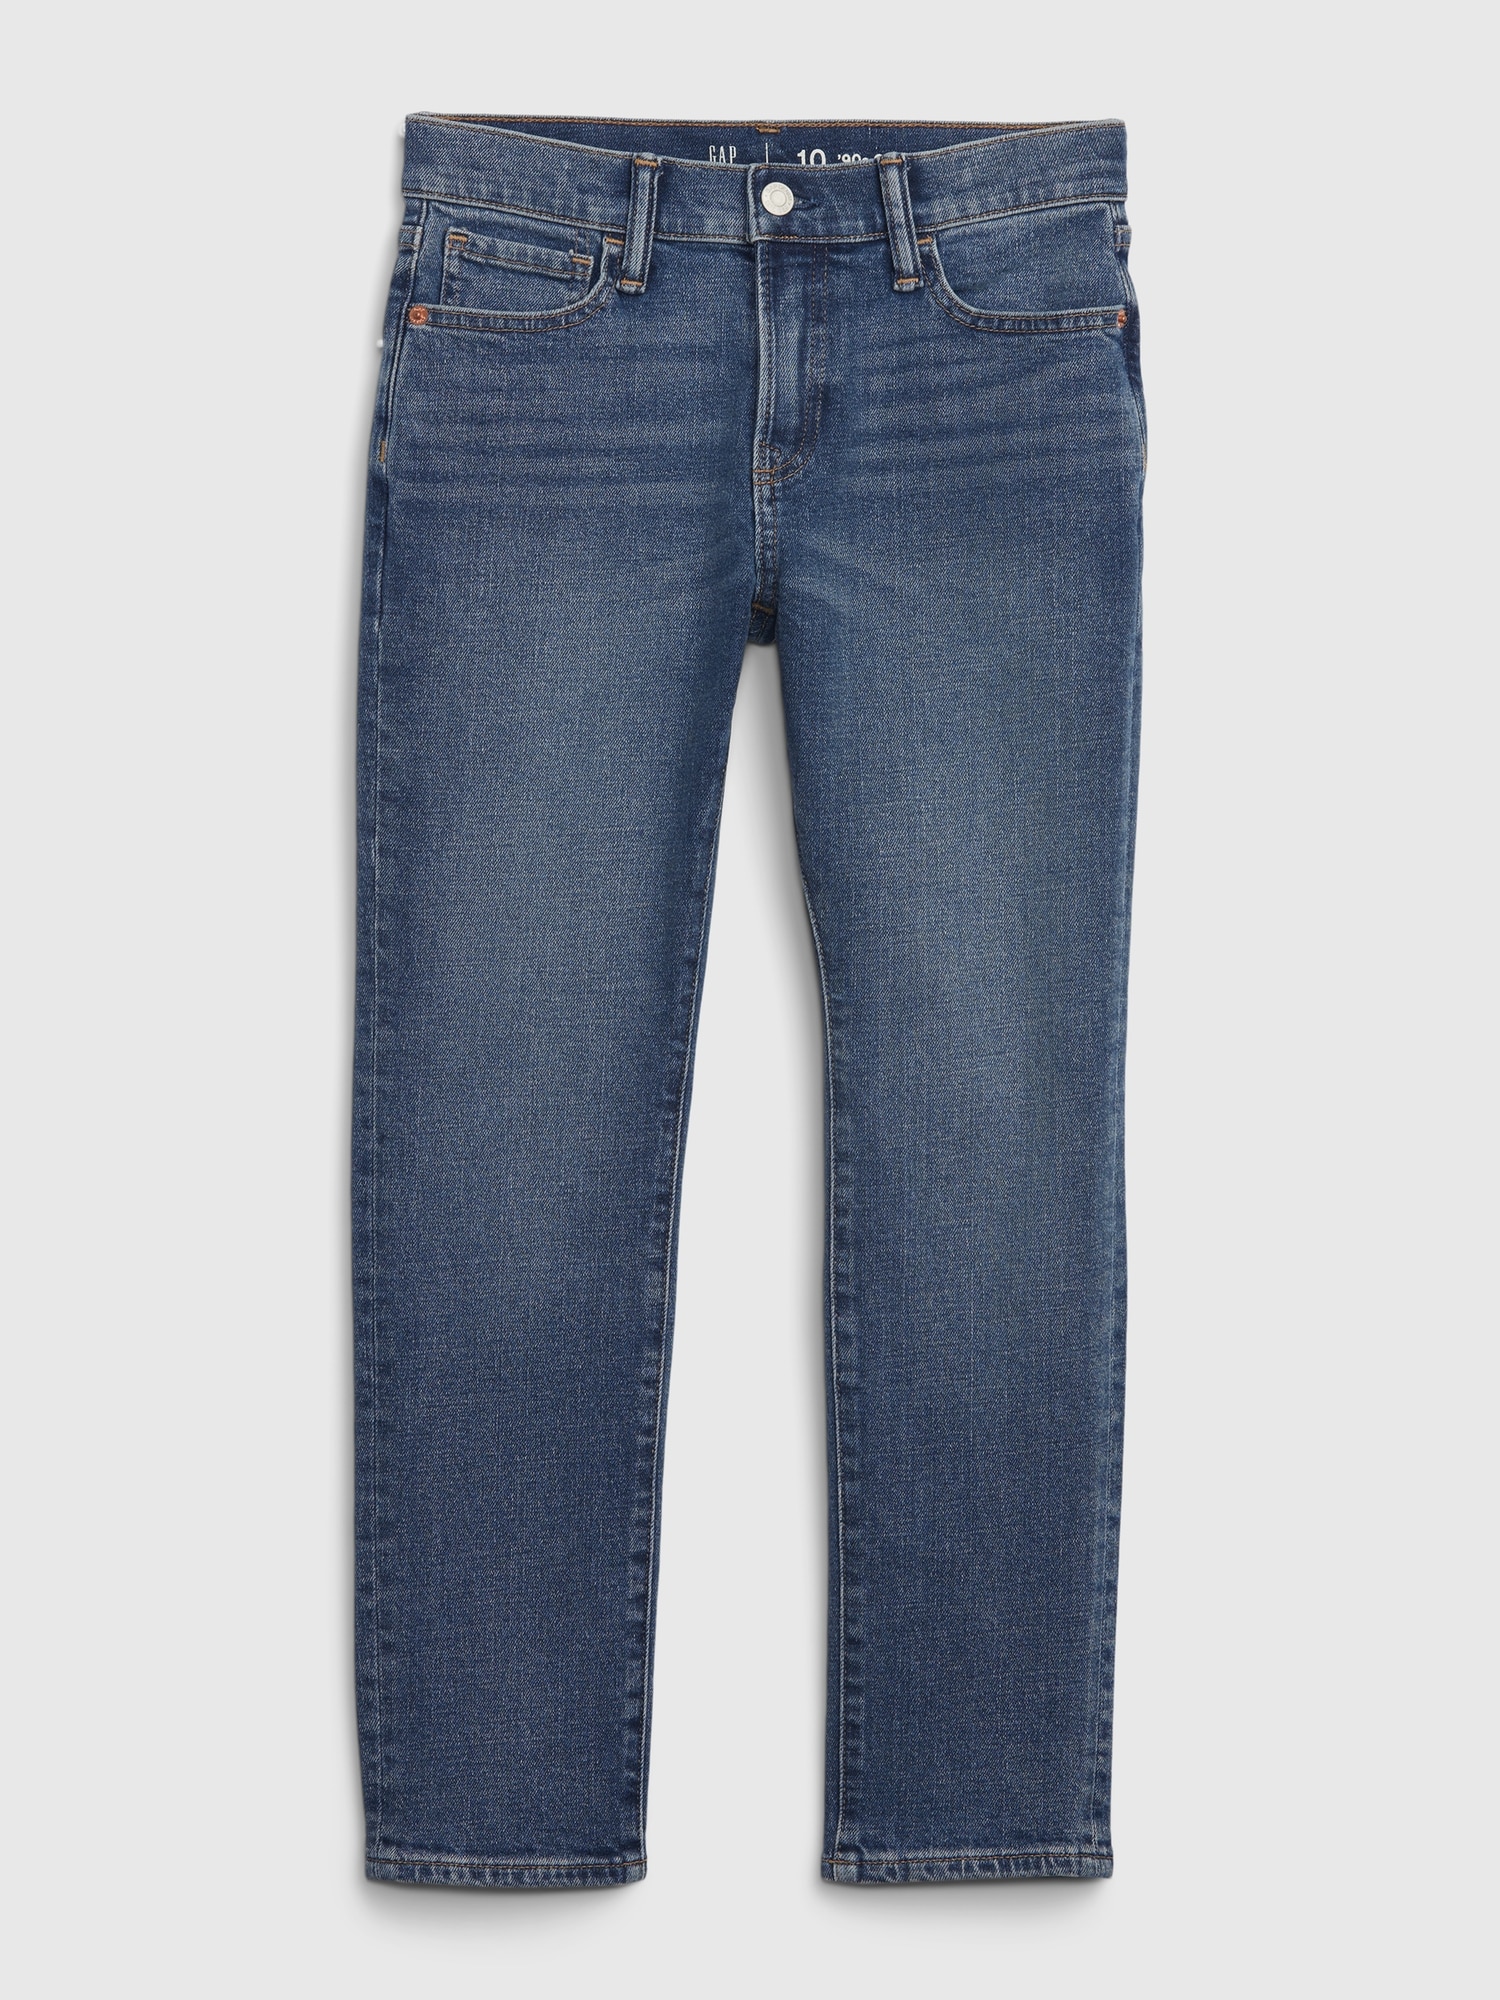 Kids Original Taper Jeans | Gap